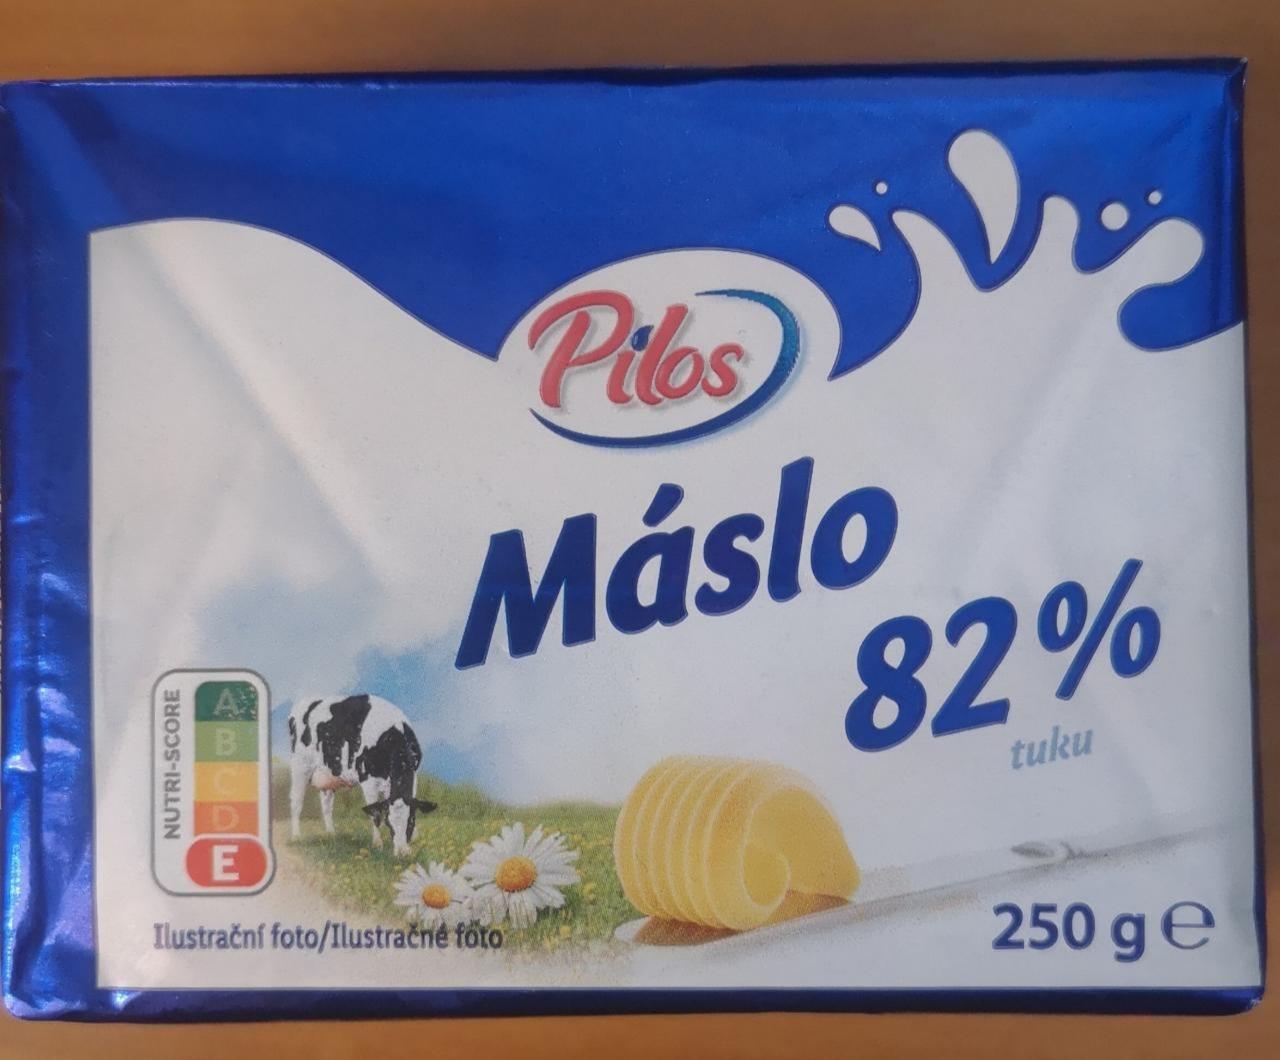 Фото - Máslo 82% Pilos